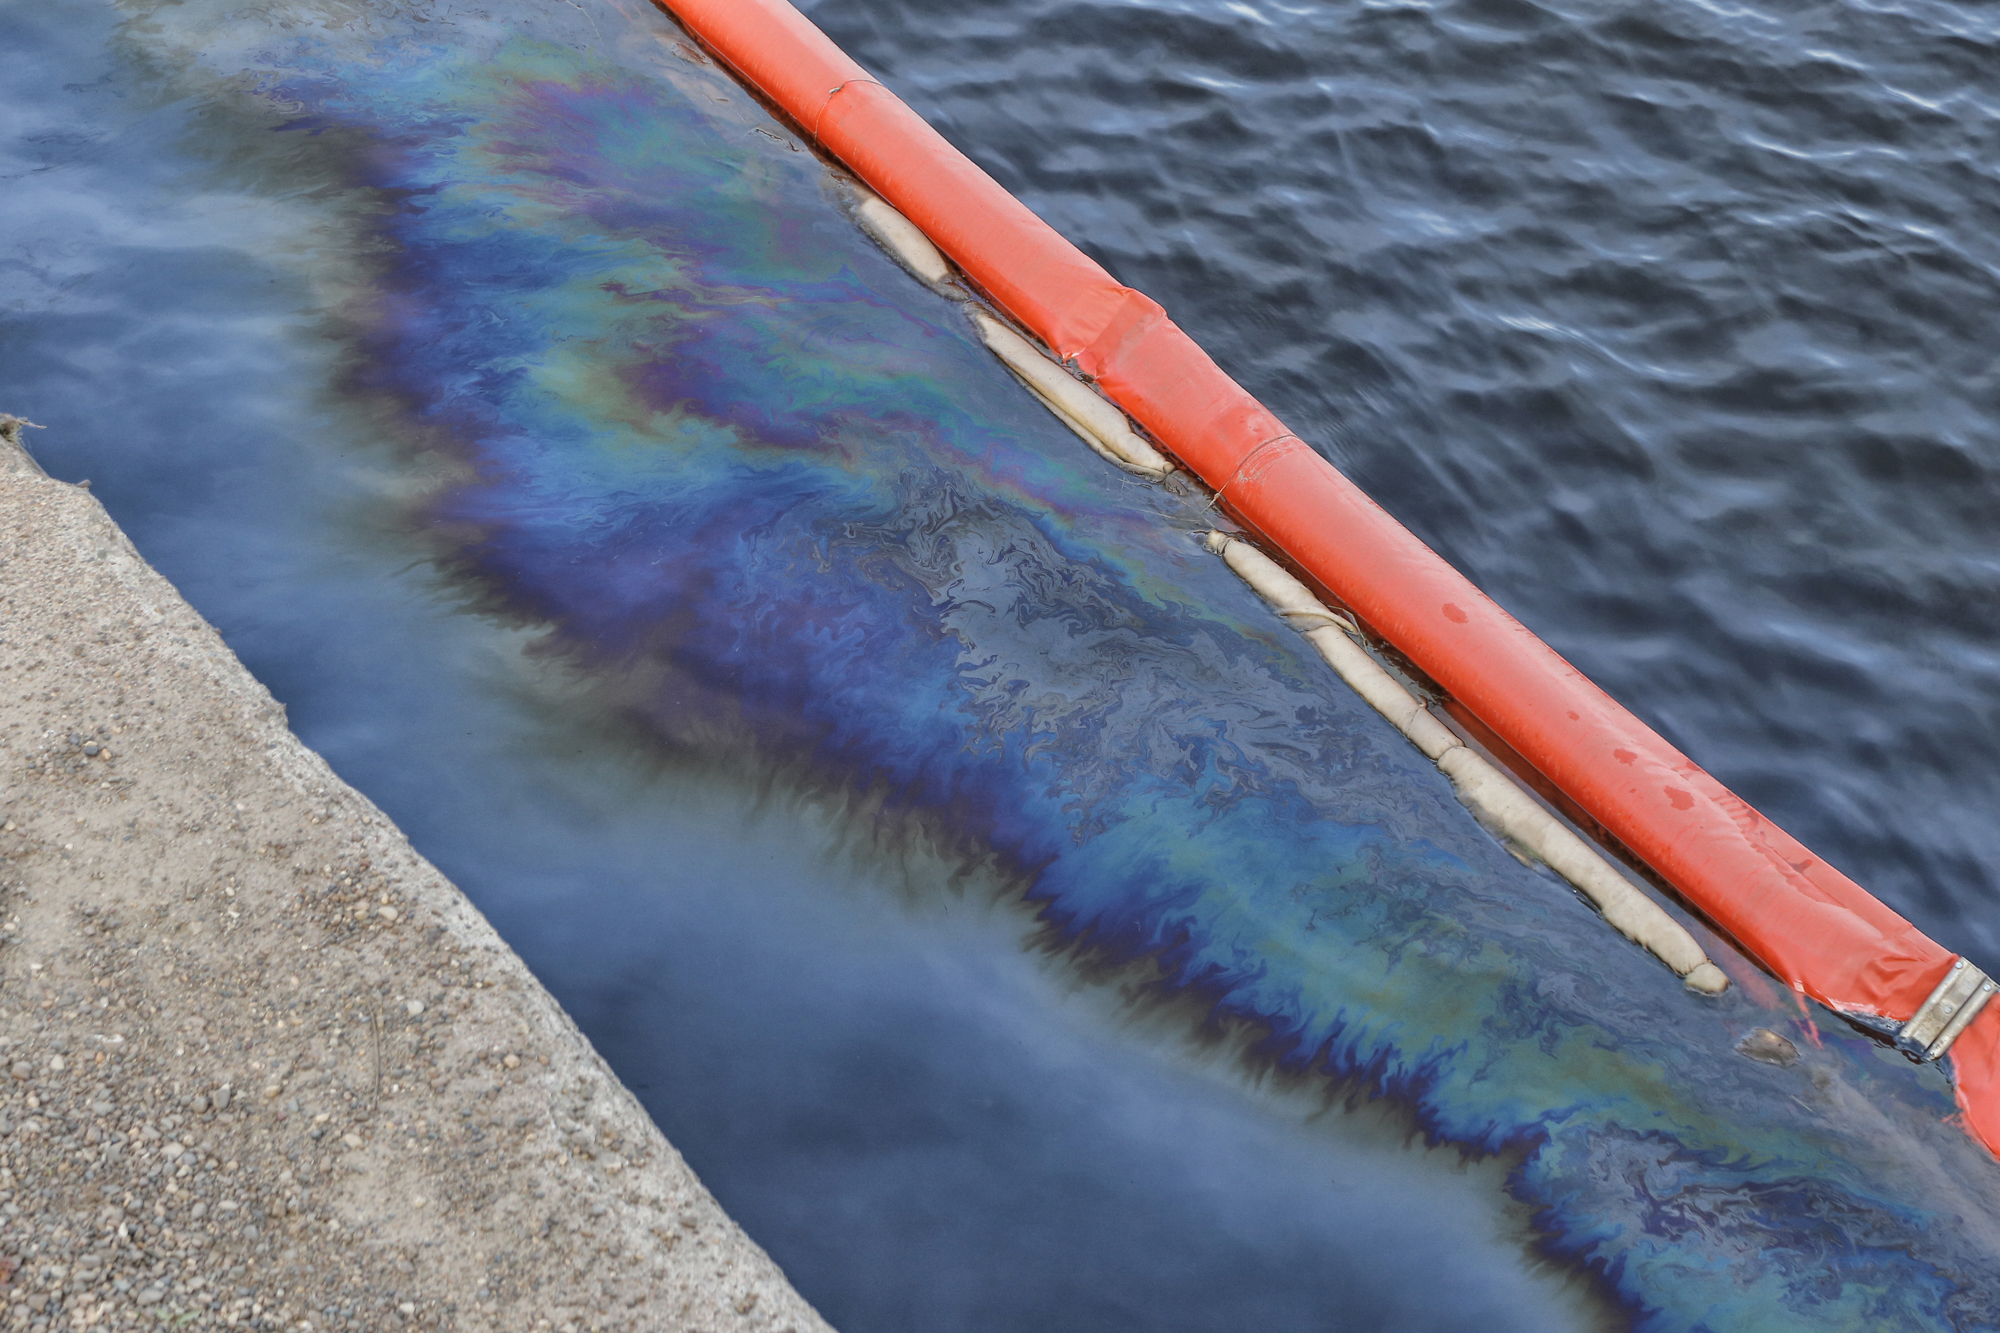 Сочащиеся из грунта нефтепродукты вновь собирают с поверхности Волги на Бурнаковке